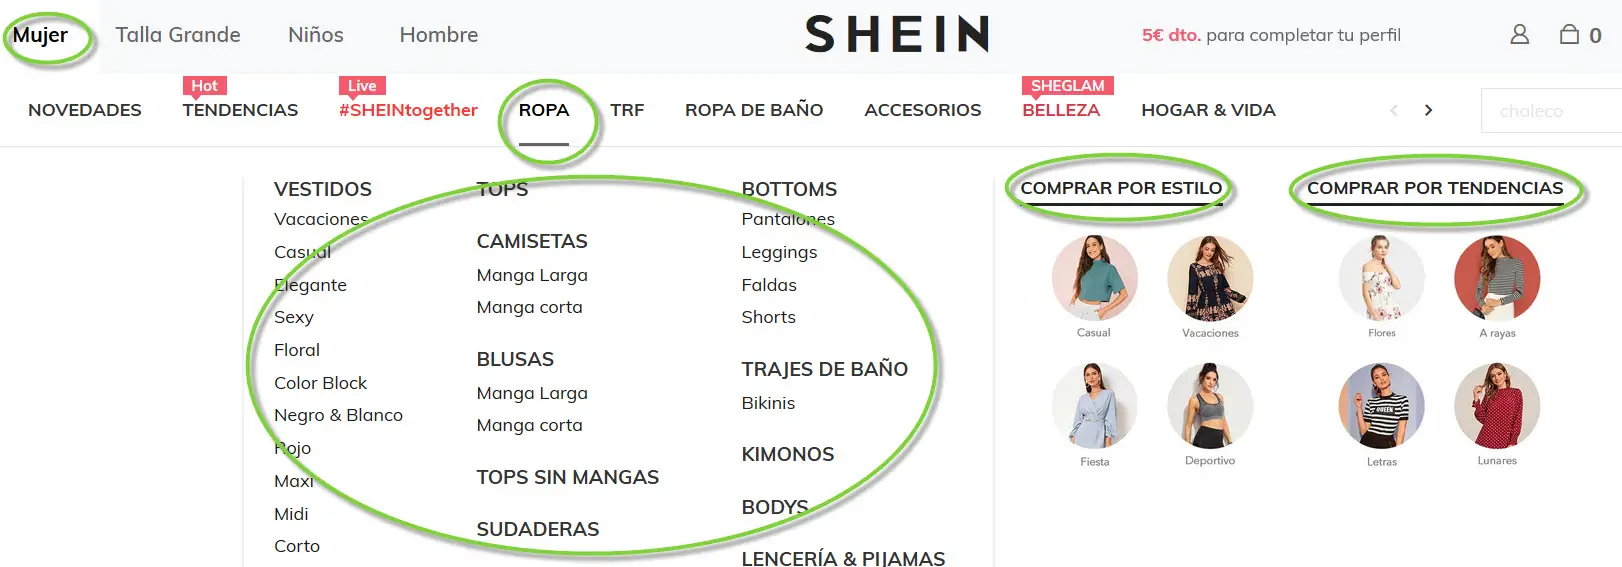 Shein catalogo – inventario